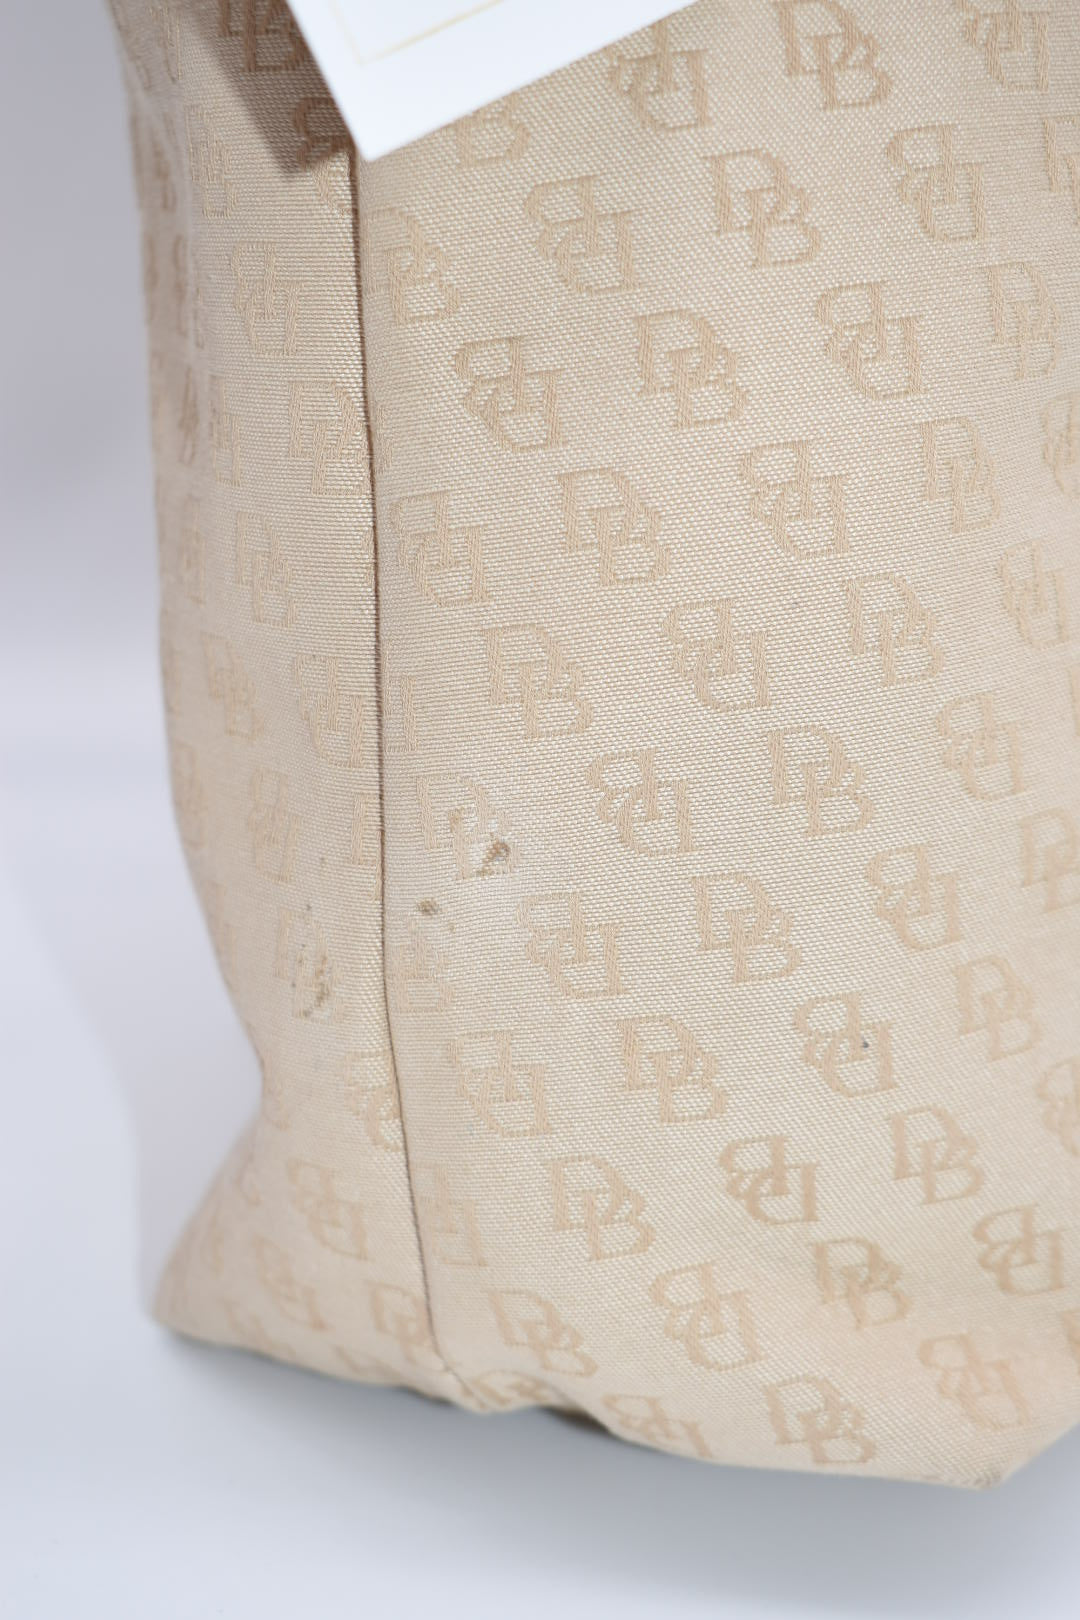 Dooney & Bourke Canvas Hobo Shoulder Bag in Brown & Tan